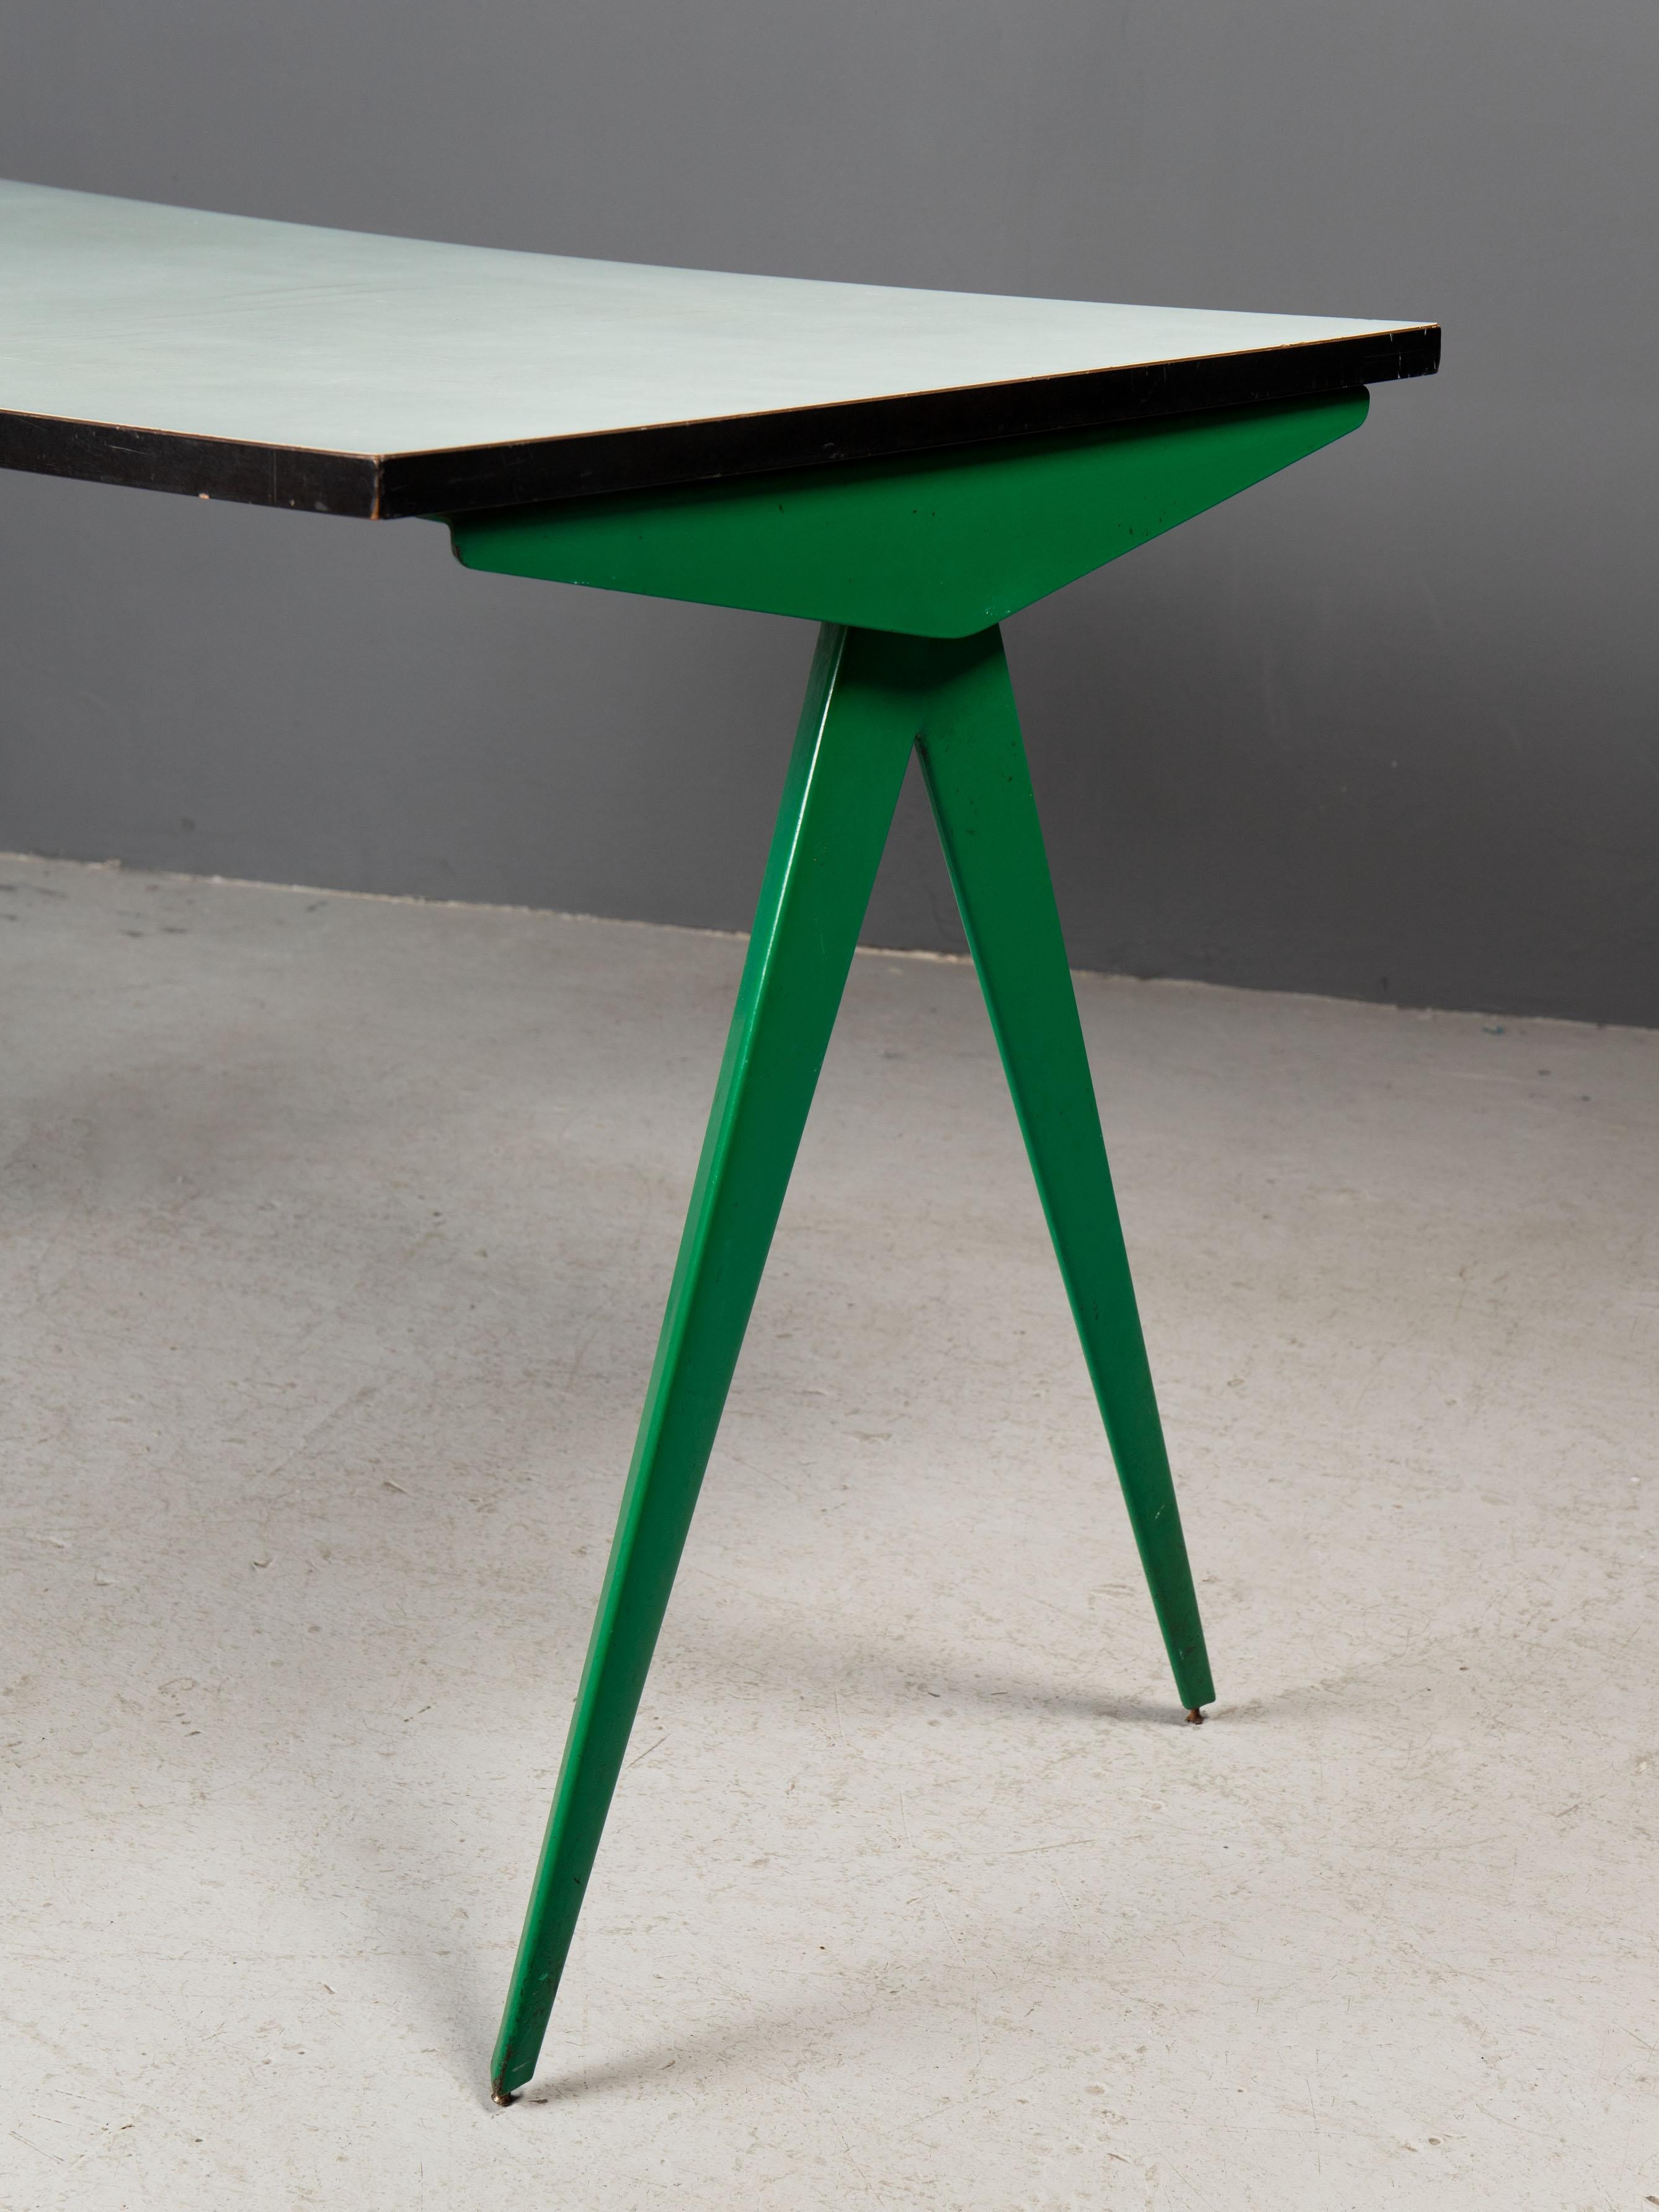 Eleganter grüner Schreibtisch von Jean Prouvé in grüner Farbe. Unberührter Originalzustand, hergestellt vom Atelier Jean Prouvé in den 1950er Jahren.